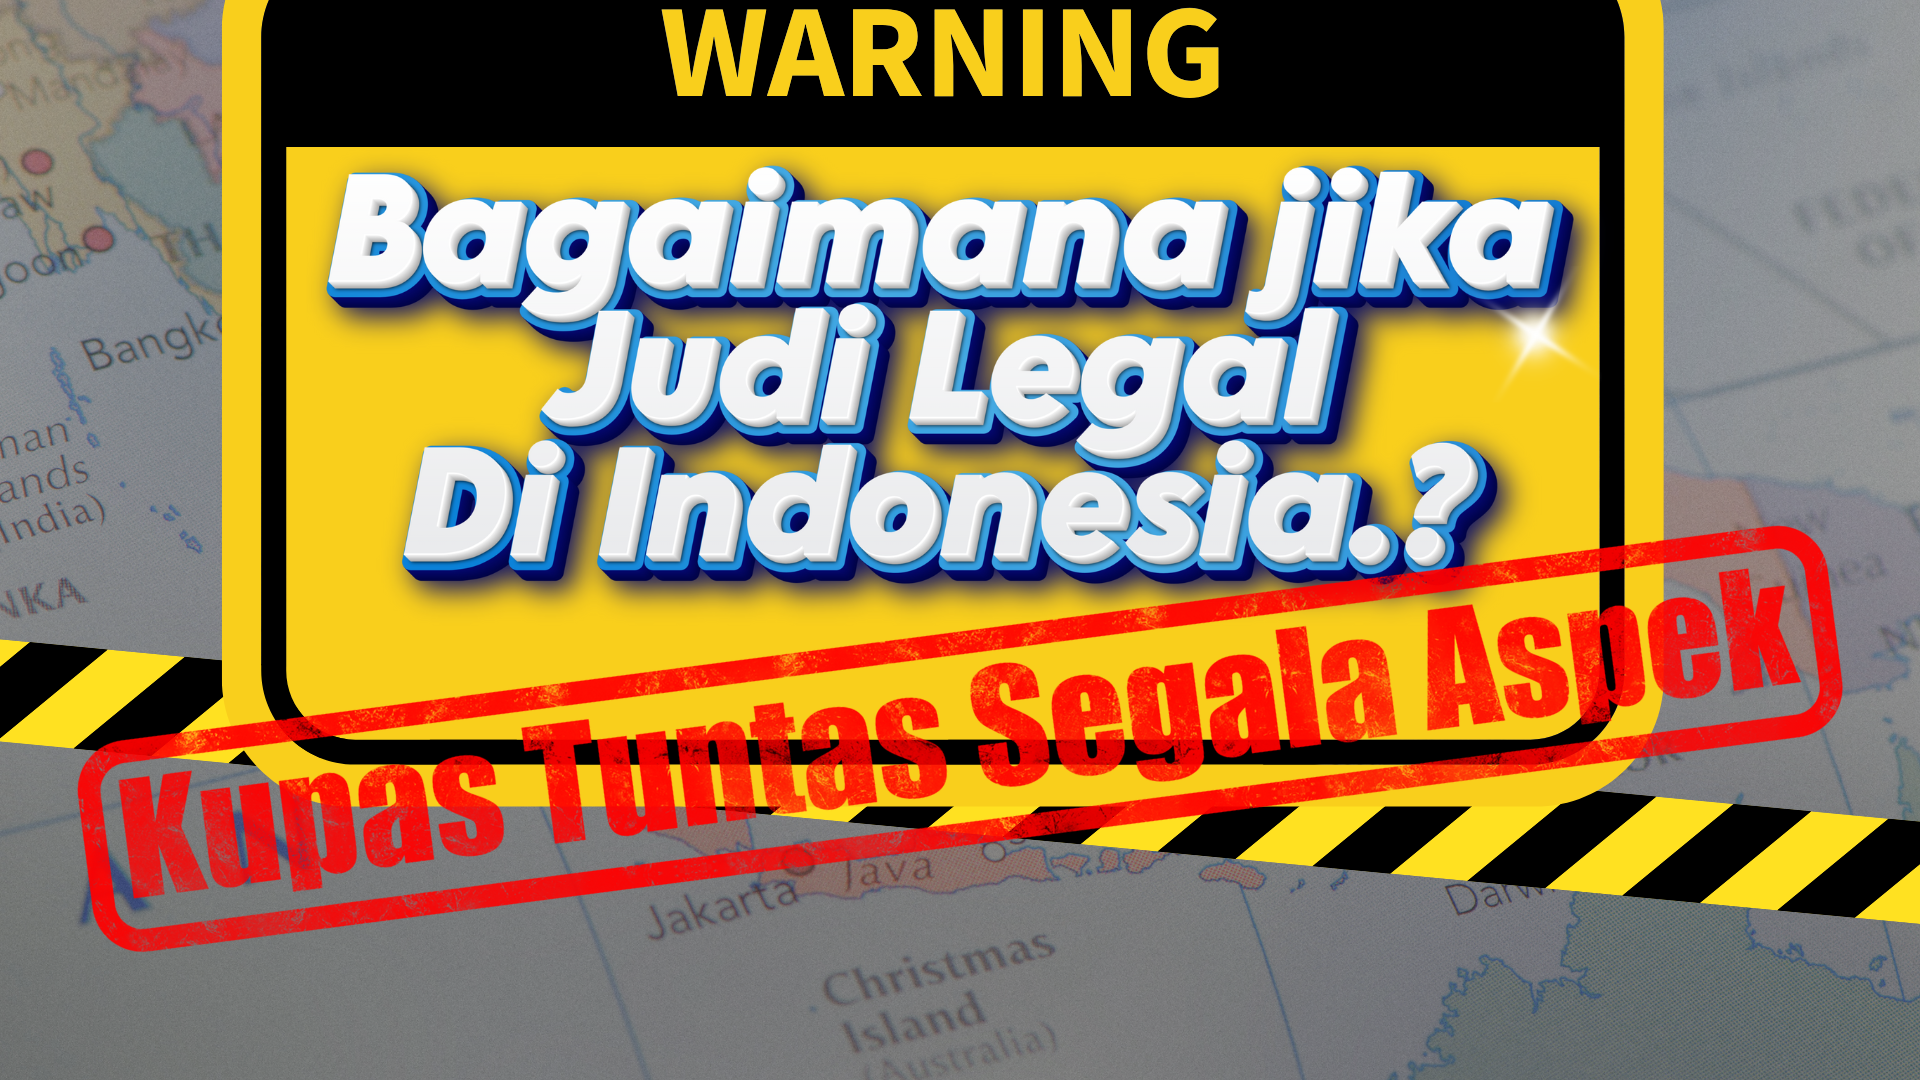 jika judi legal di indonesia